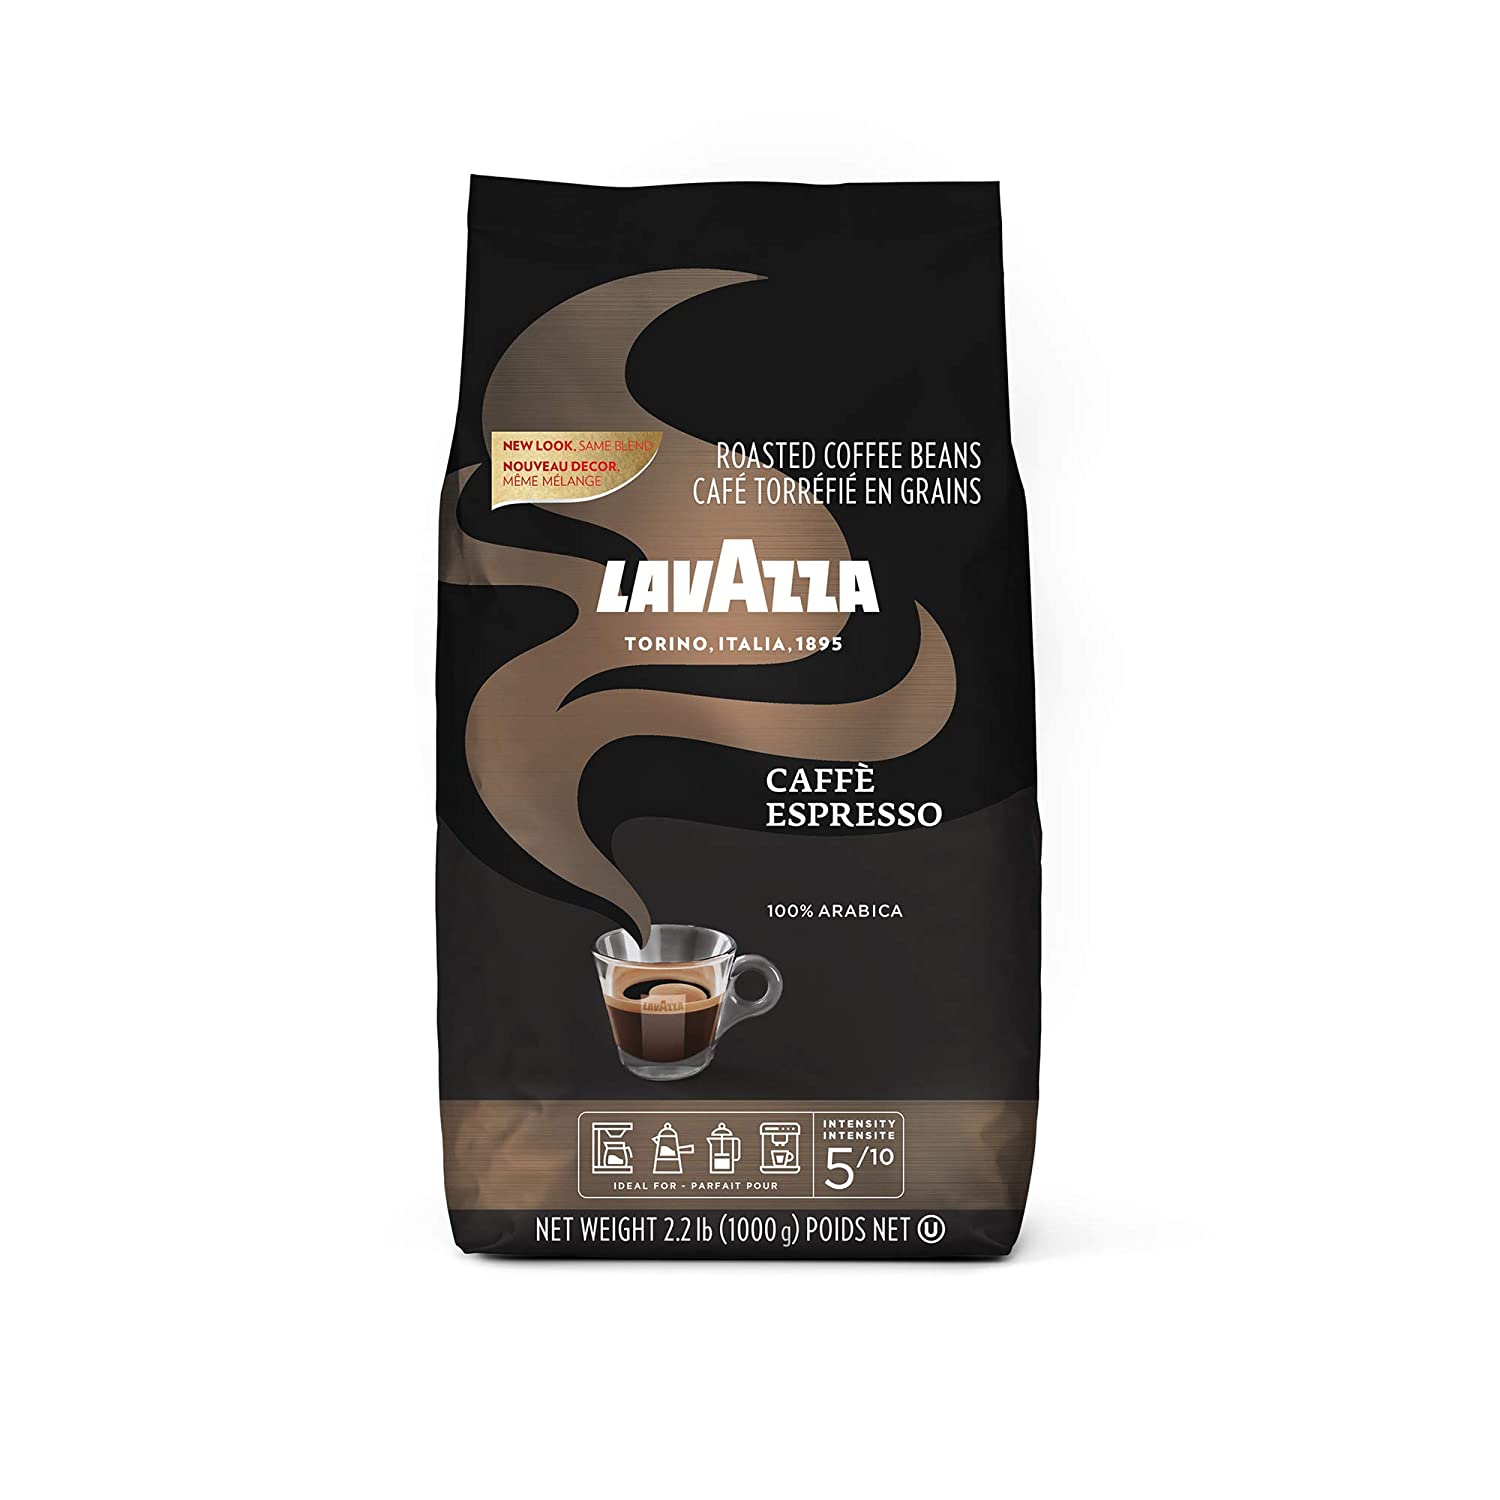 Lavazza Caffe Espresso Whole Bean Coffee Blend